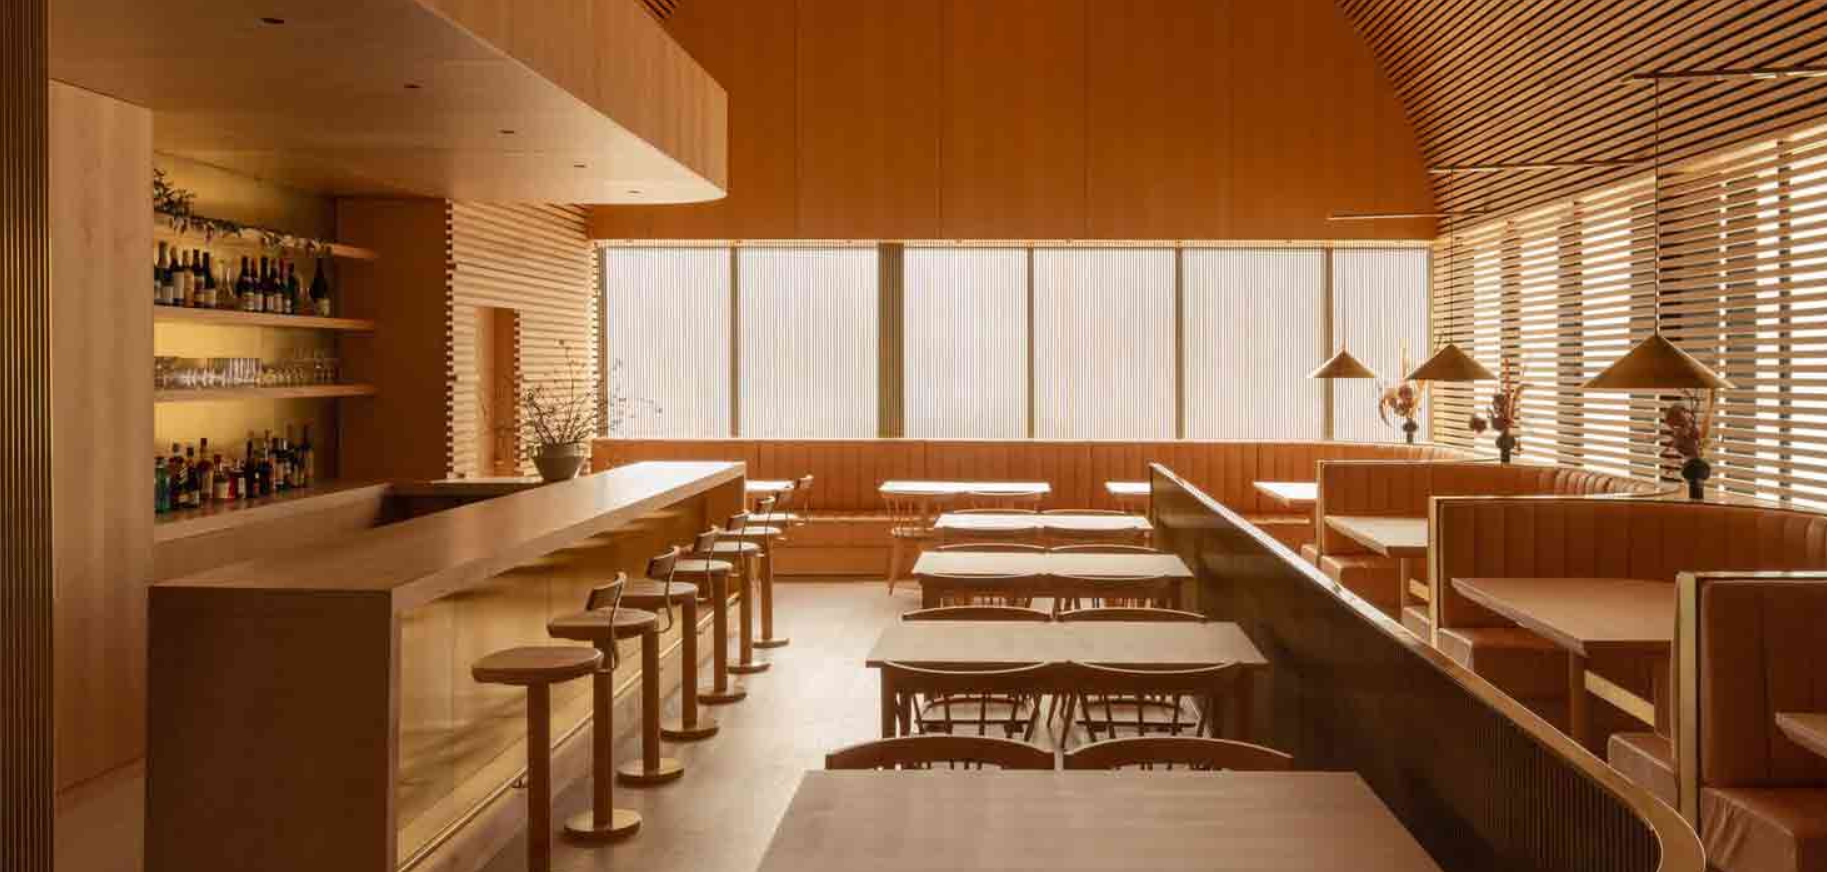 Arquitectos para restaurantes: Cómo el diseño arquitectónico cambia la gastronómica 23